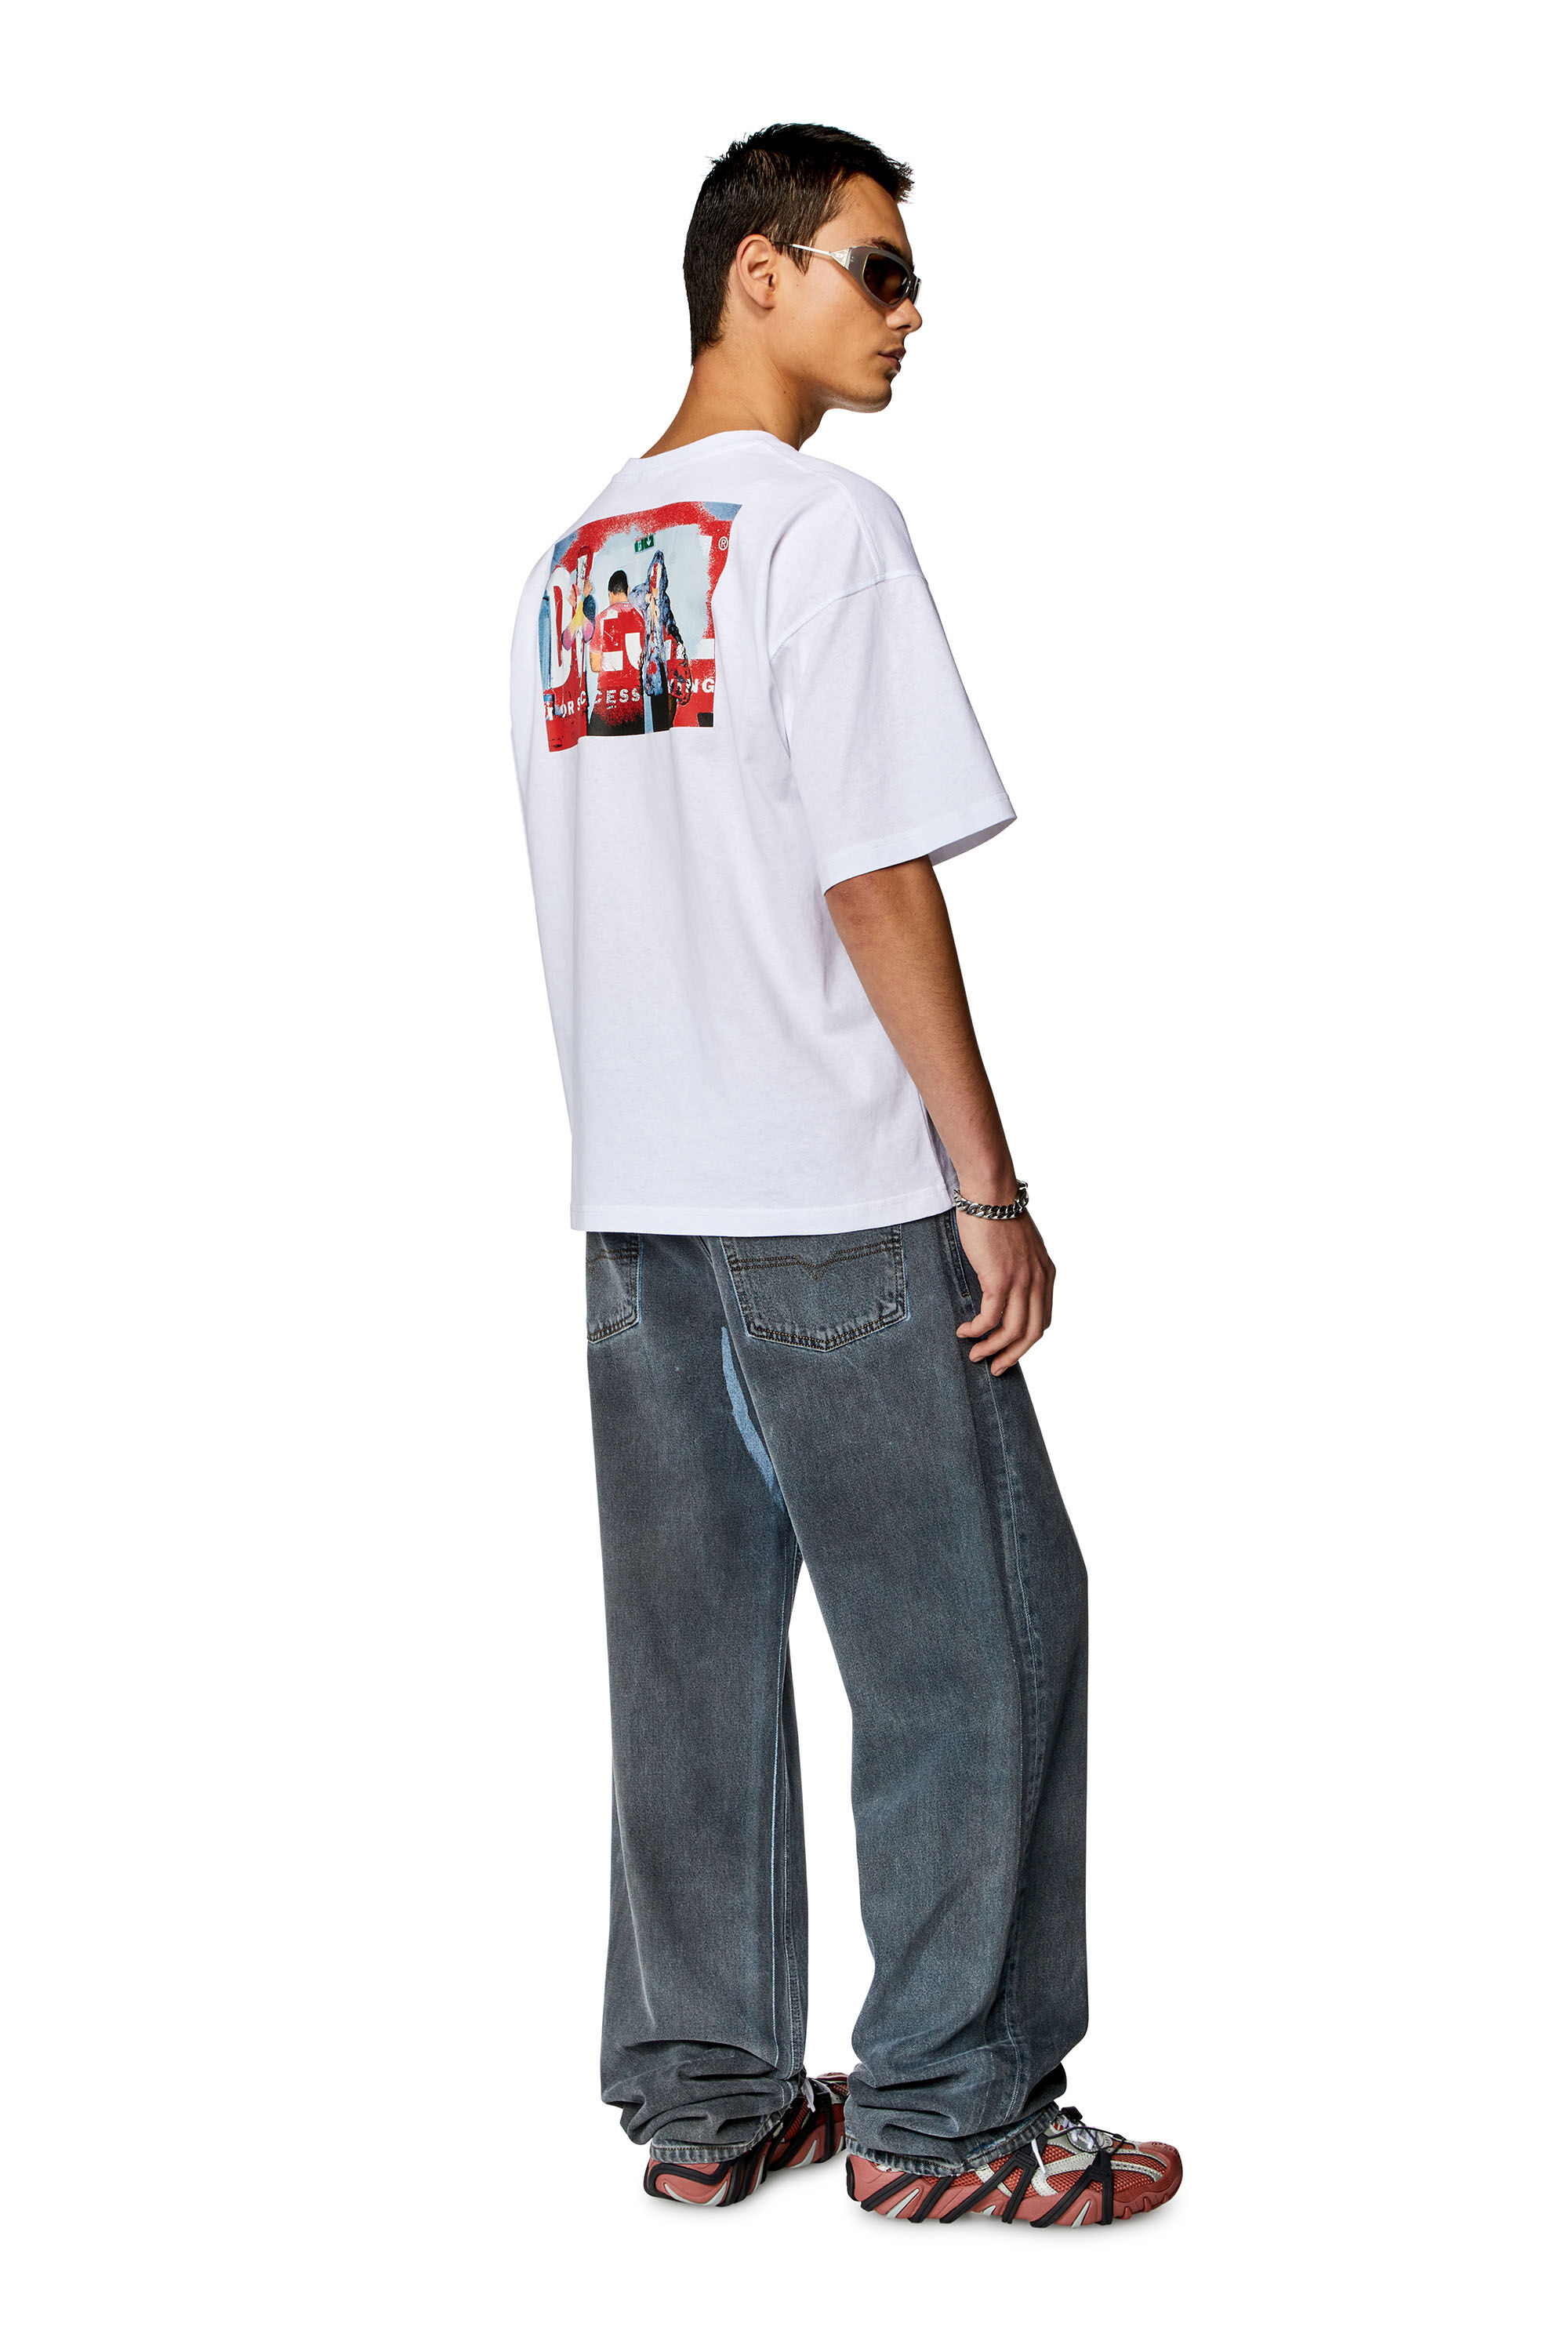 Diesel - T-BOXT-N11, Homme T-shirt avec logo imprimé photo in Blanc - Image 1